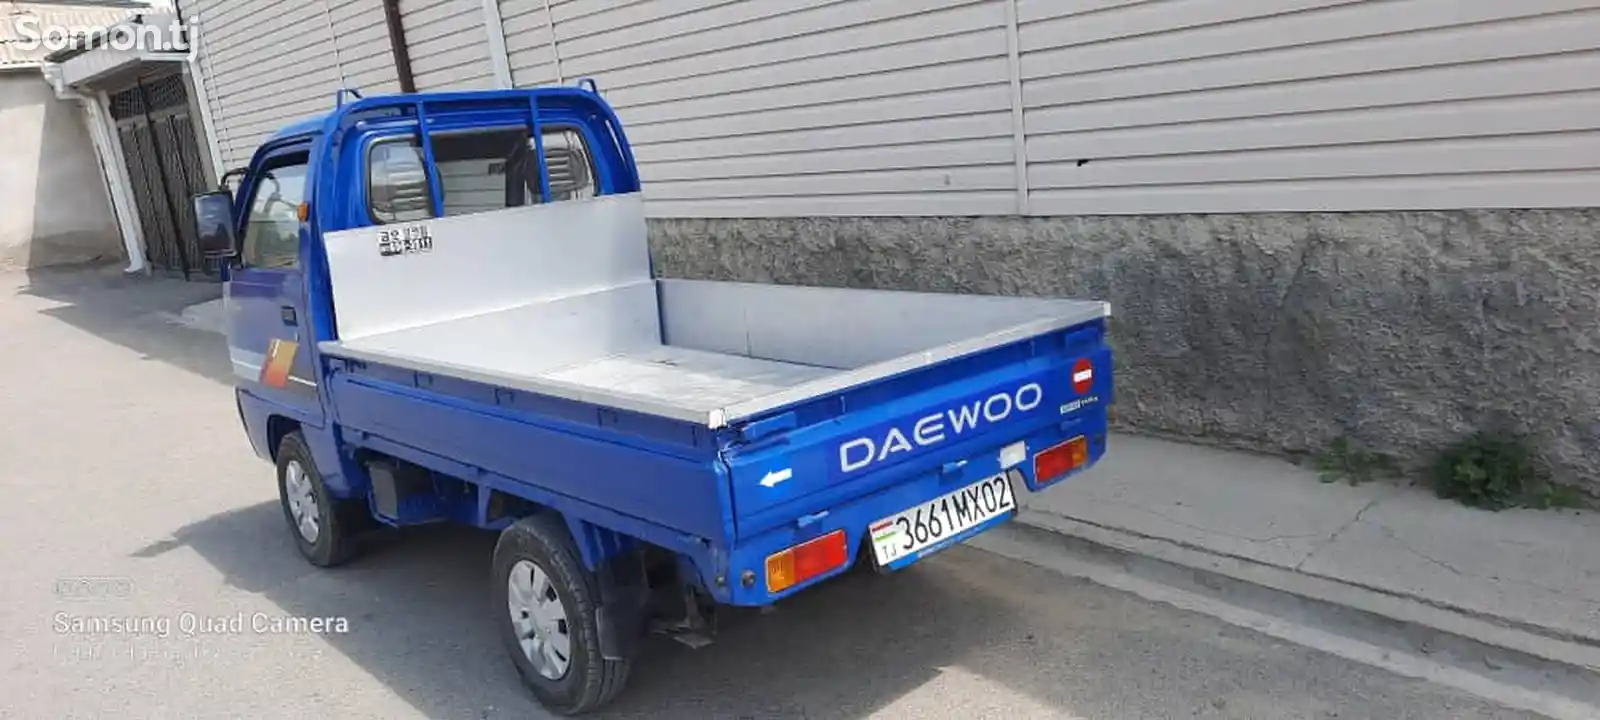 Бортовой автомобиль Daewoo Labo, 2011-4